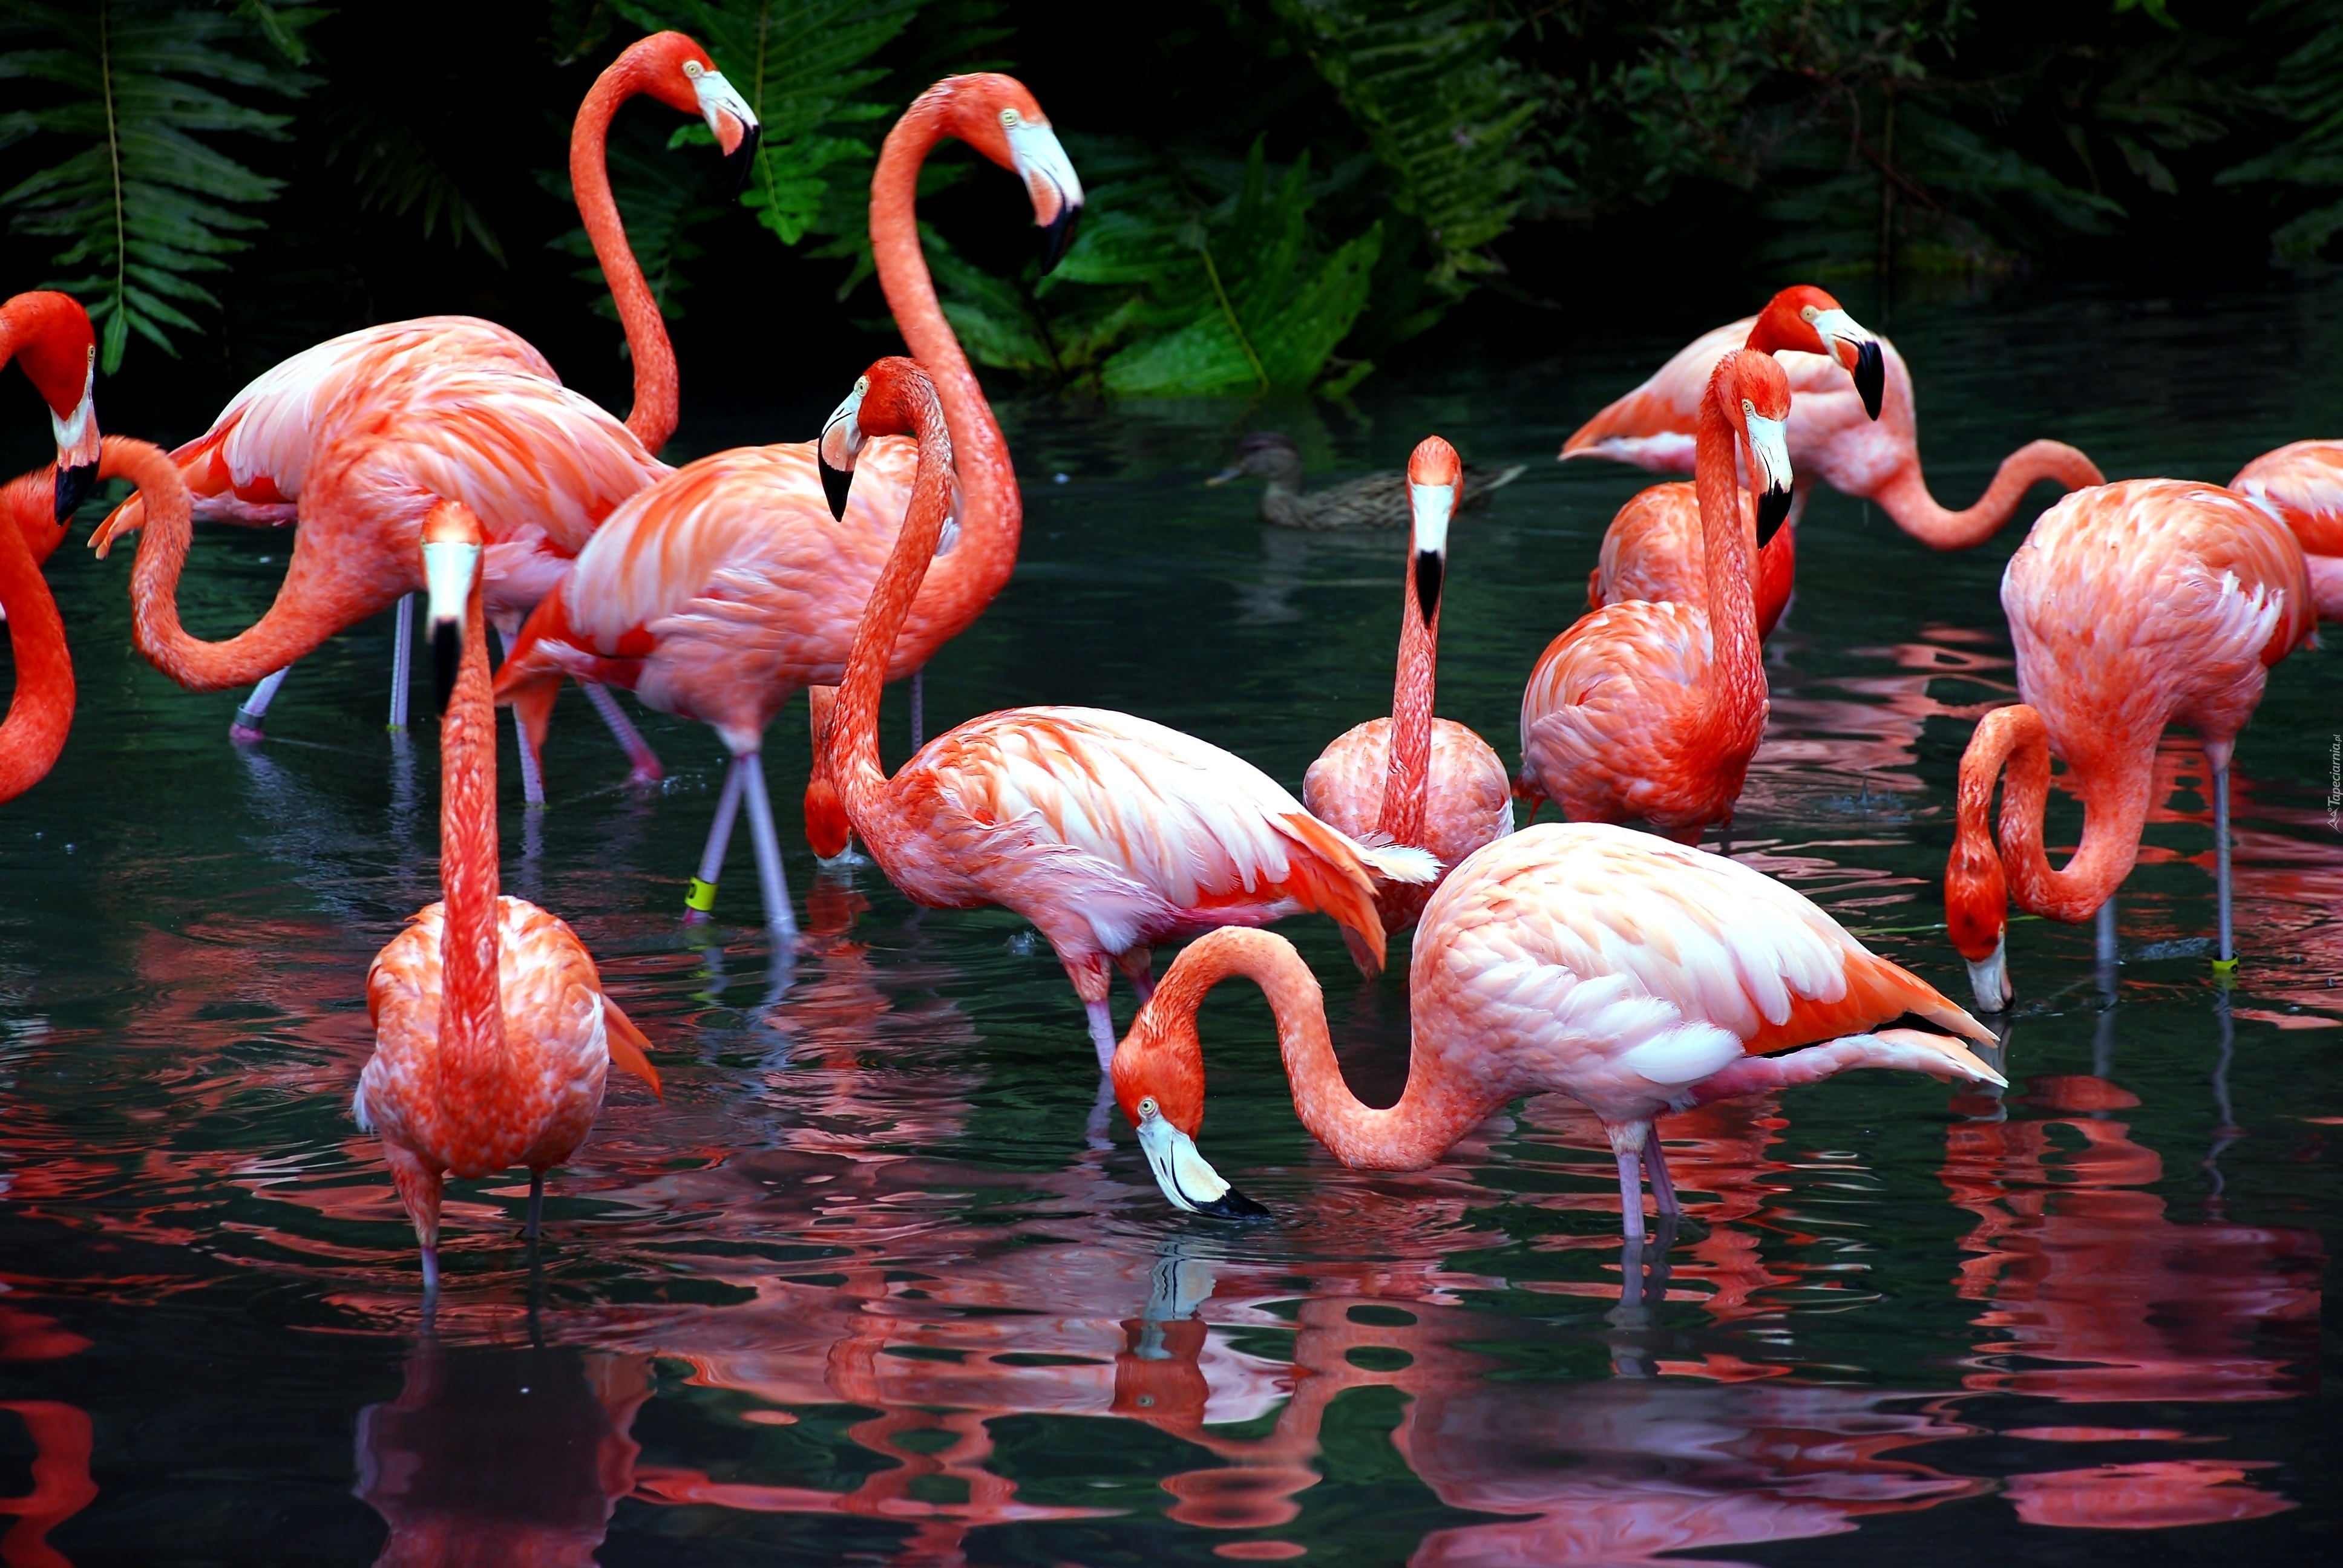 Flamingi, Staw